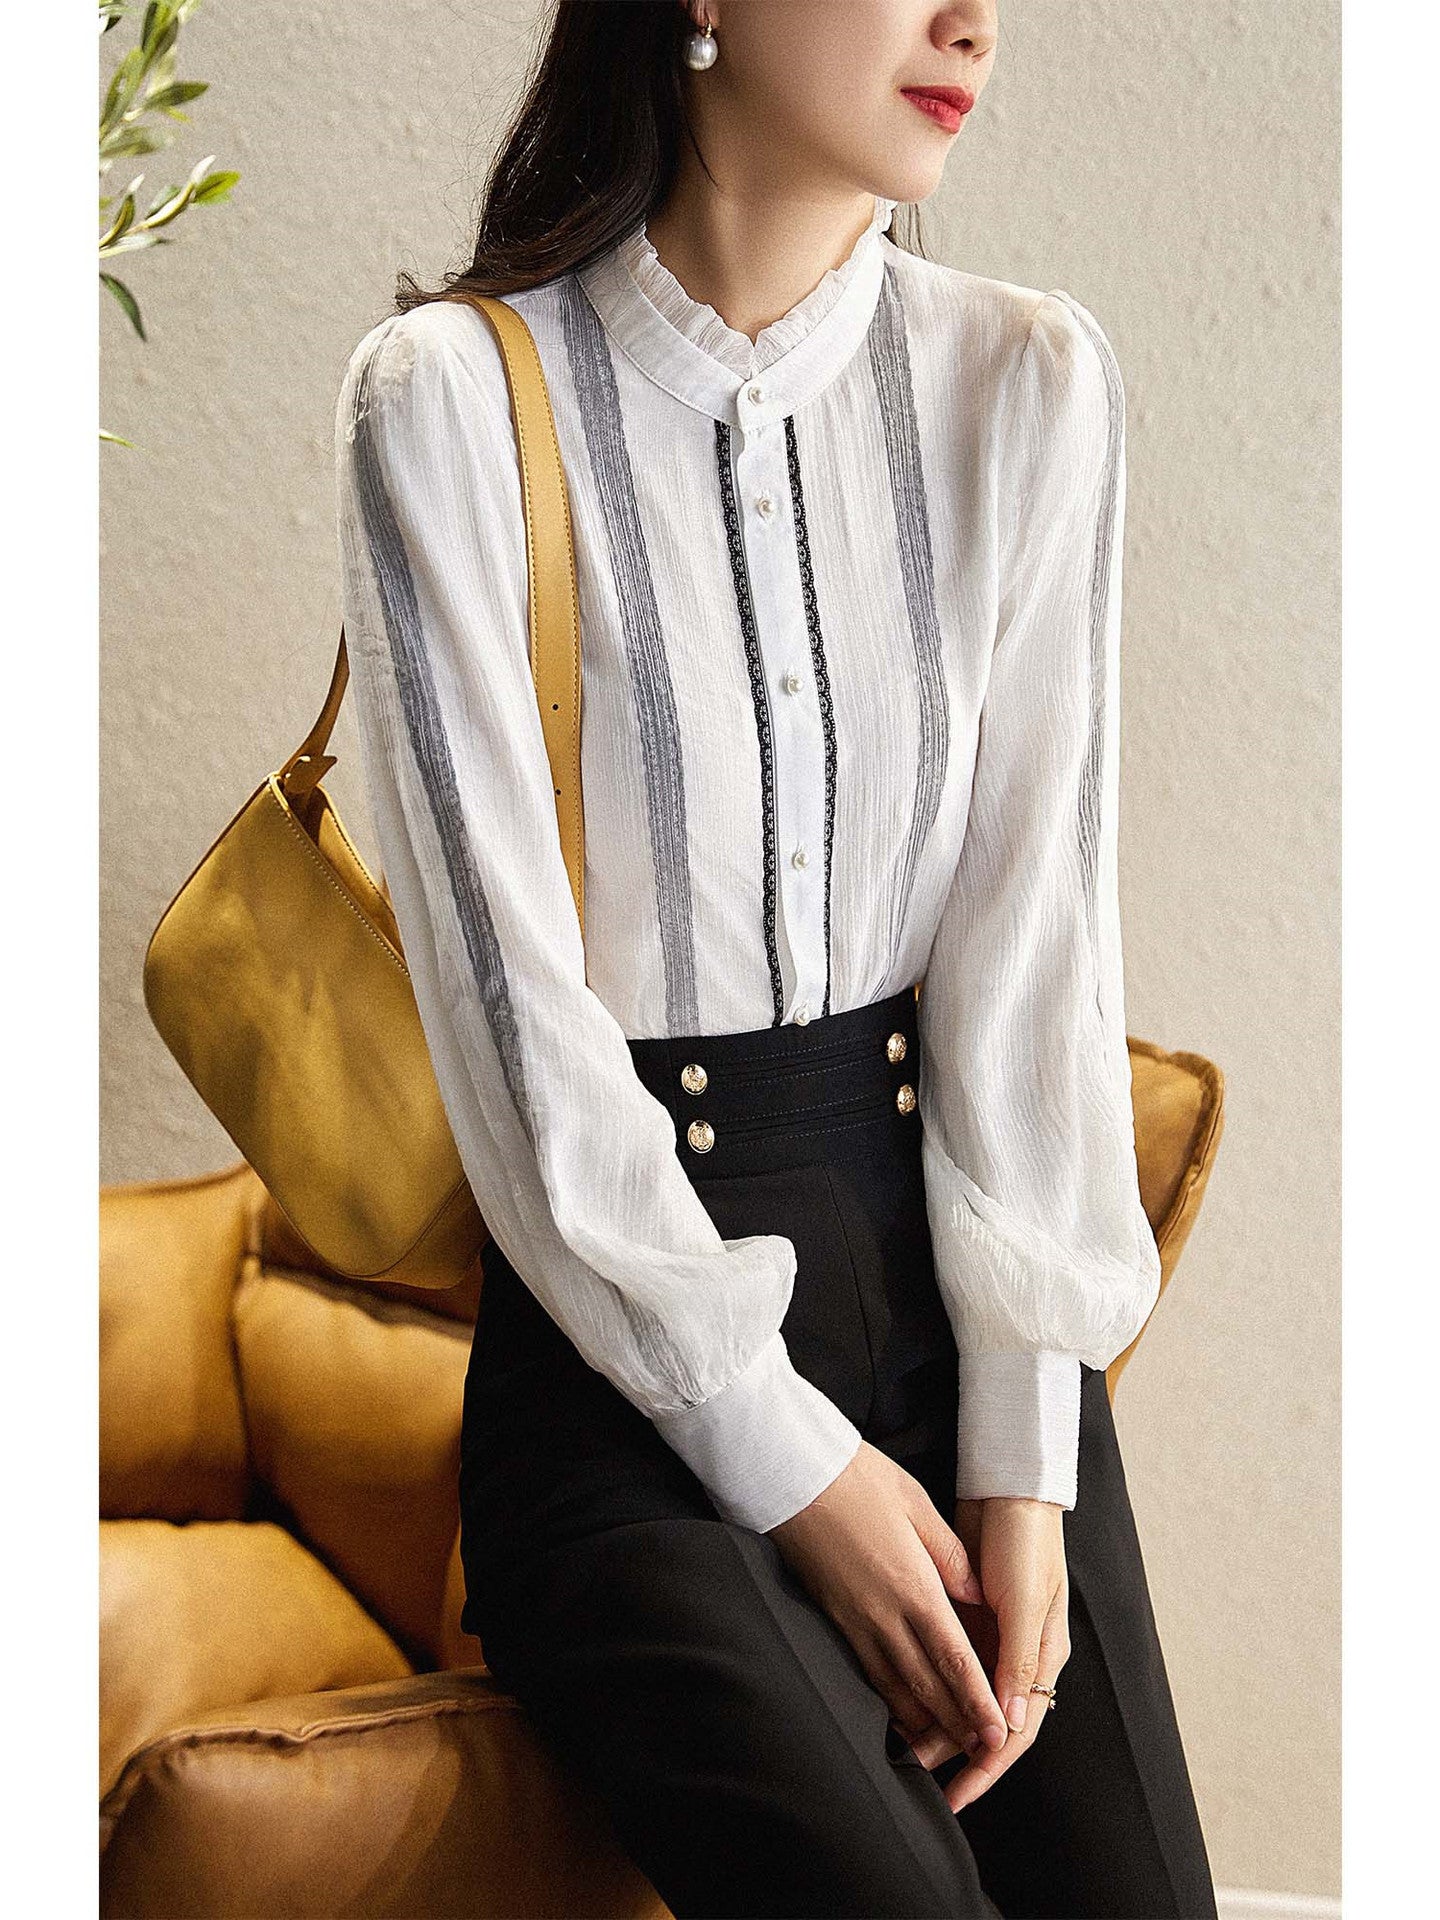 Elegant Lace Long Sleeves Shirts